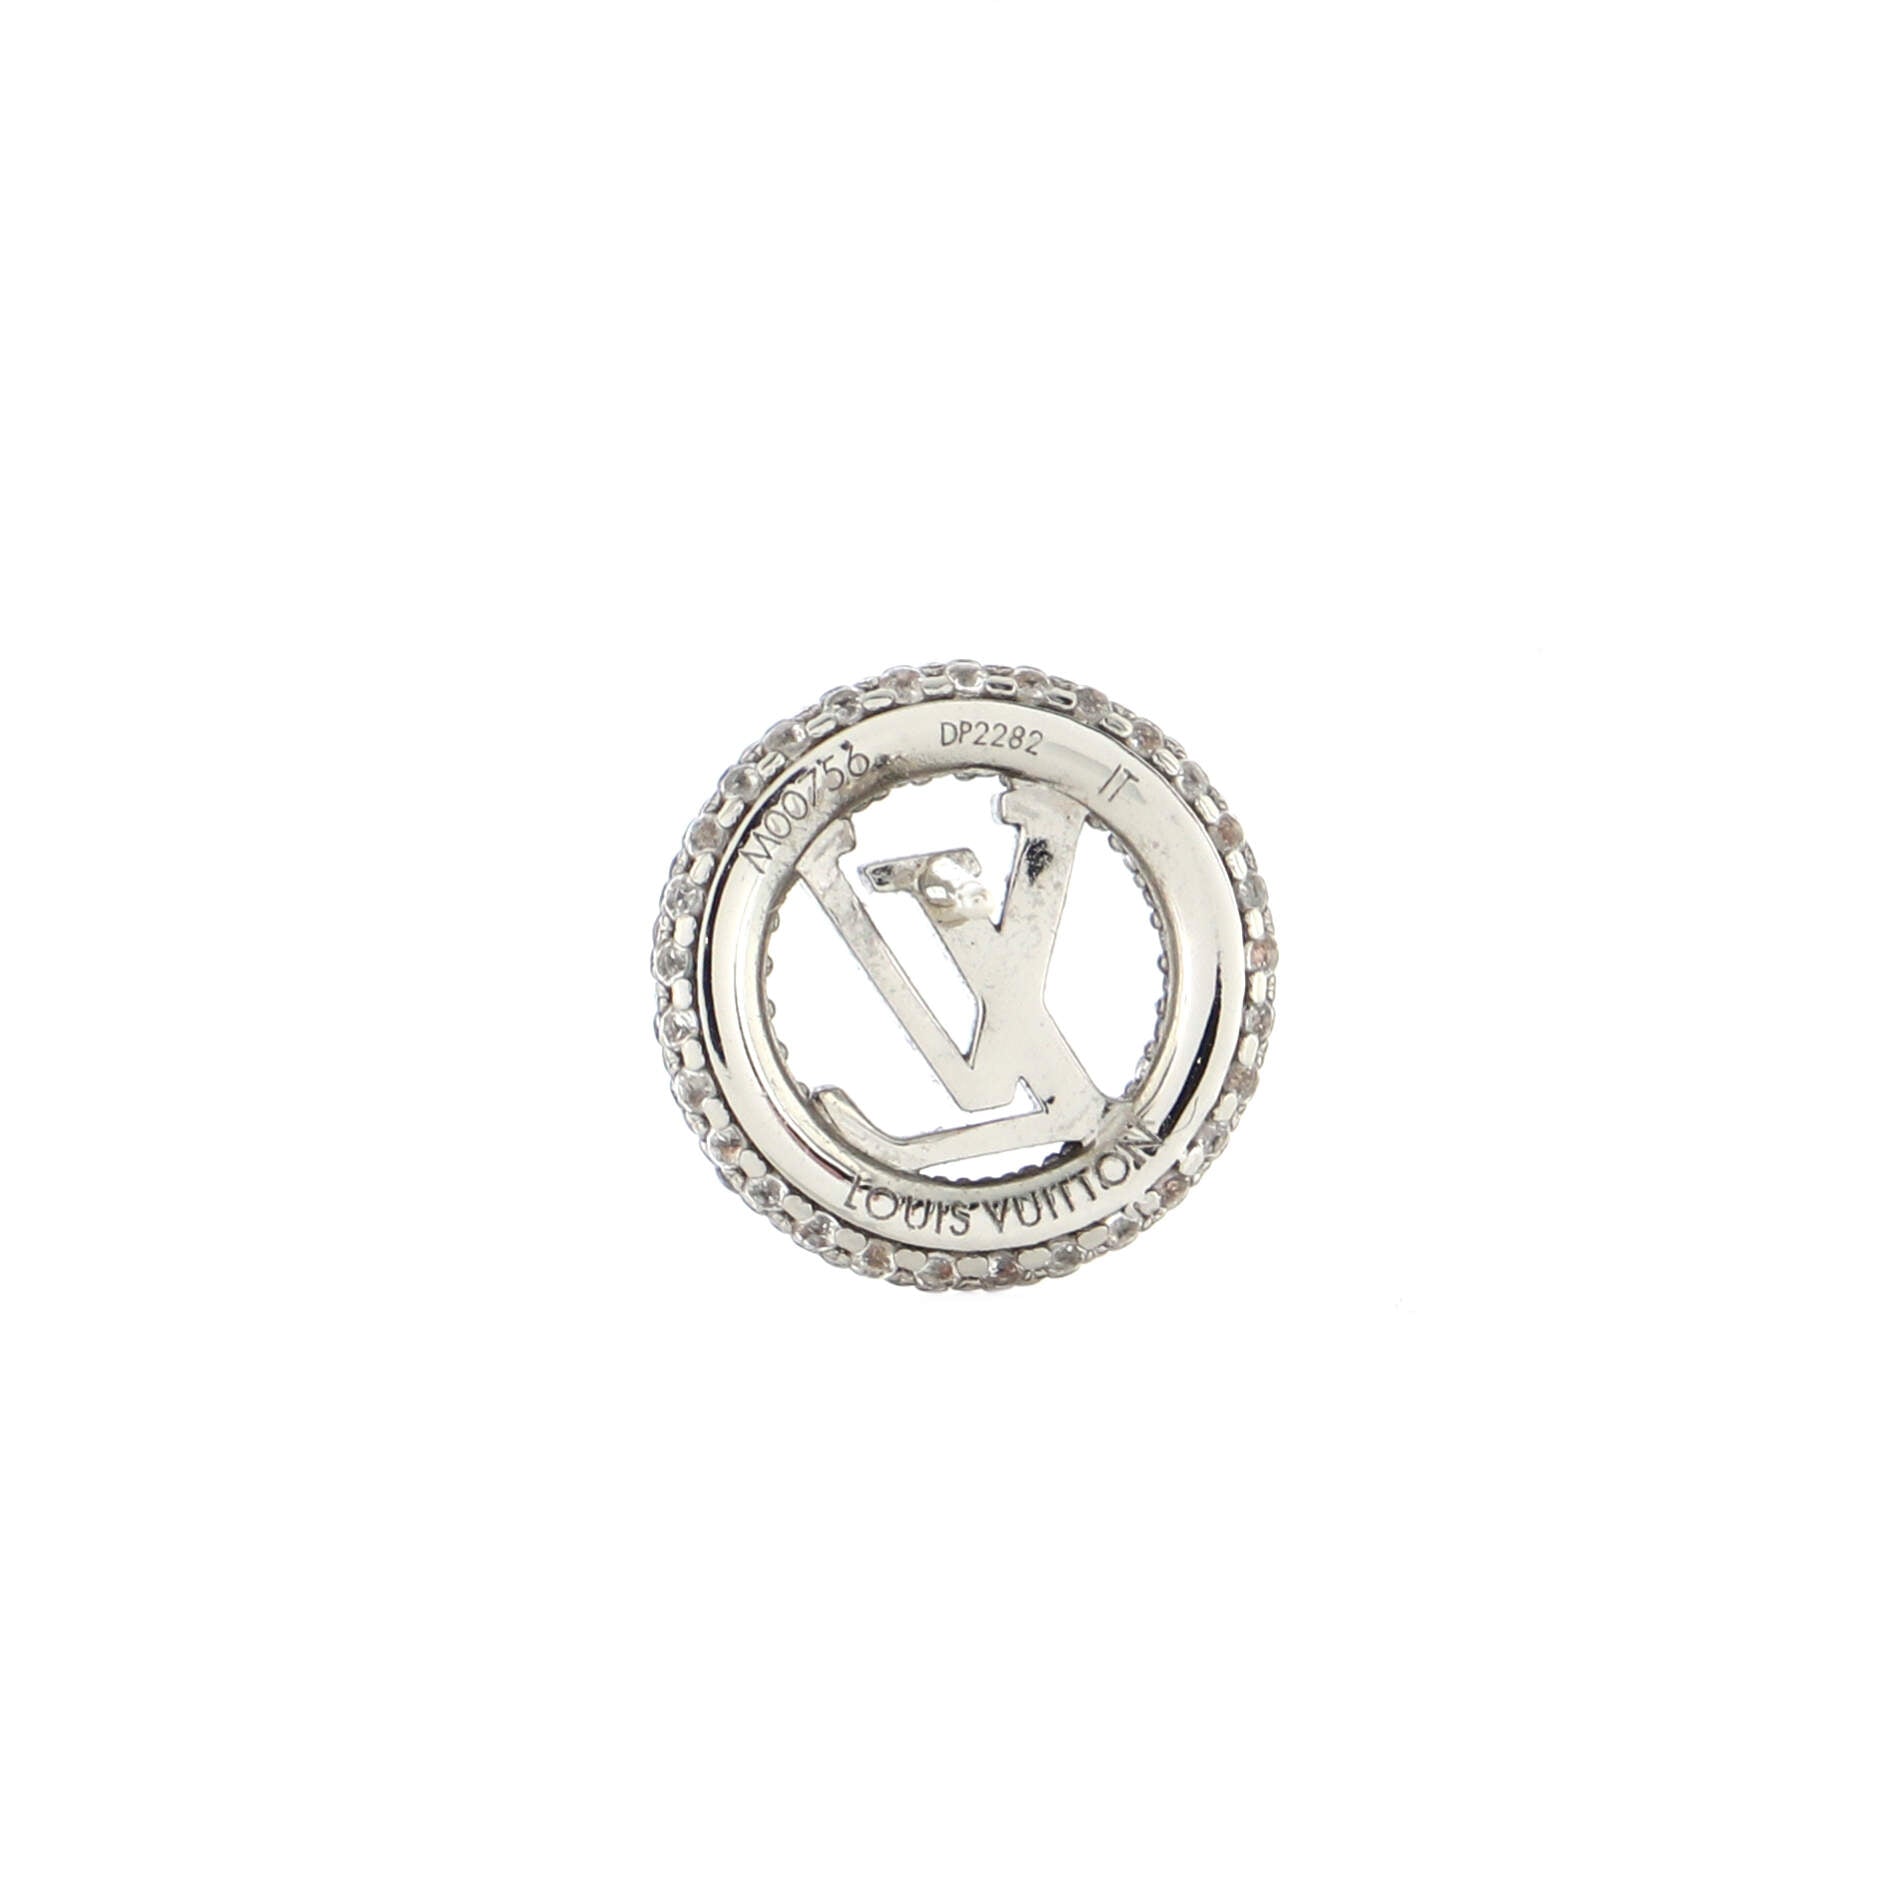 Louis Vuitton Louise by Night Earrings